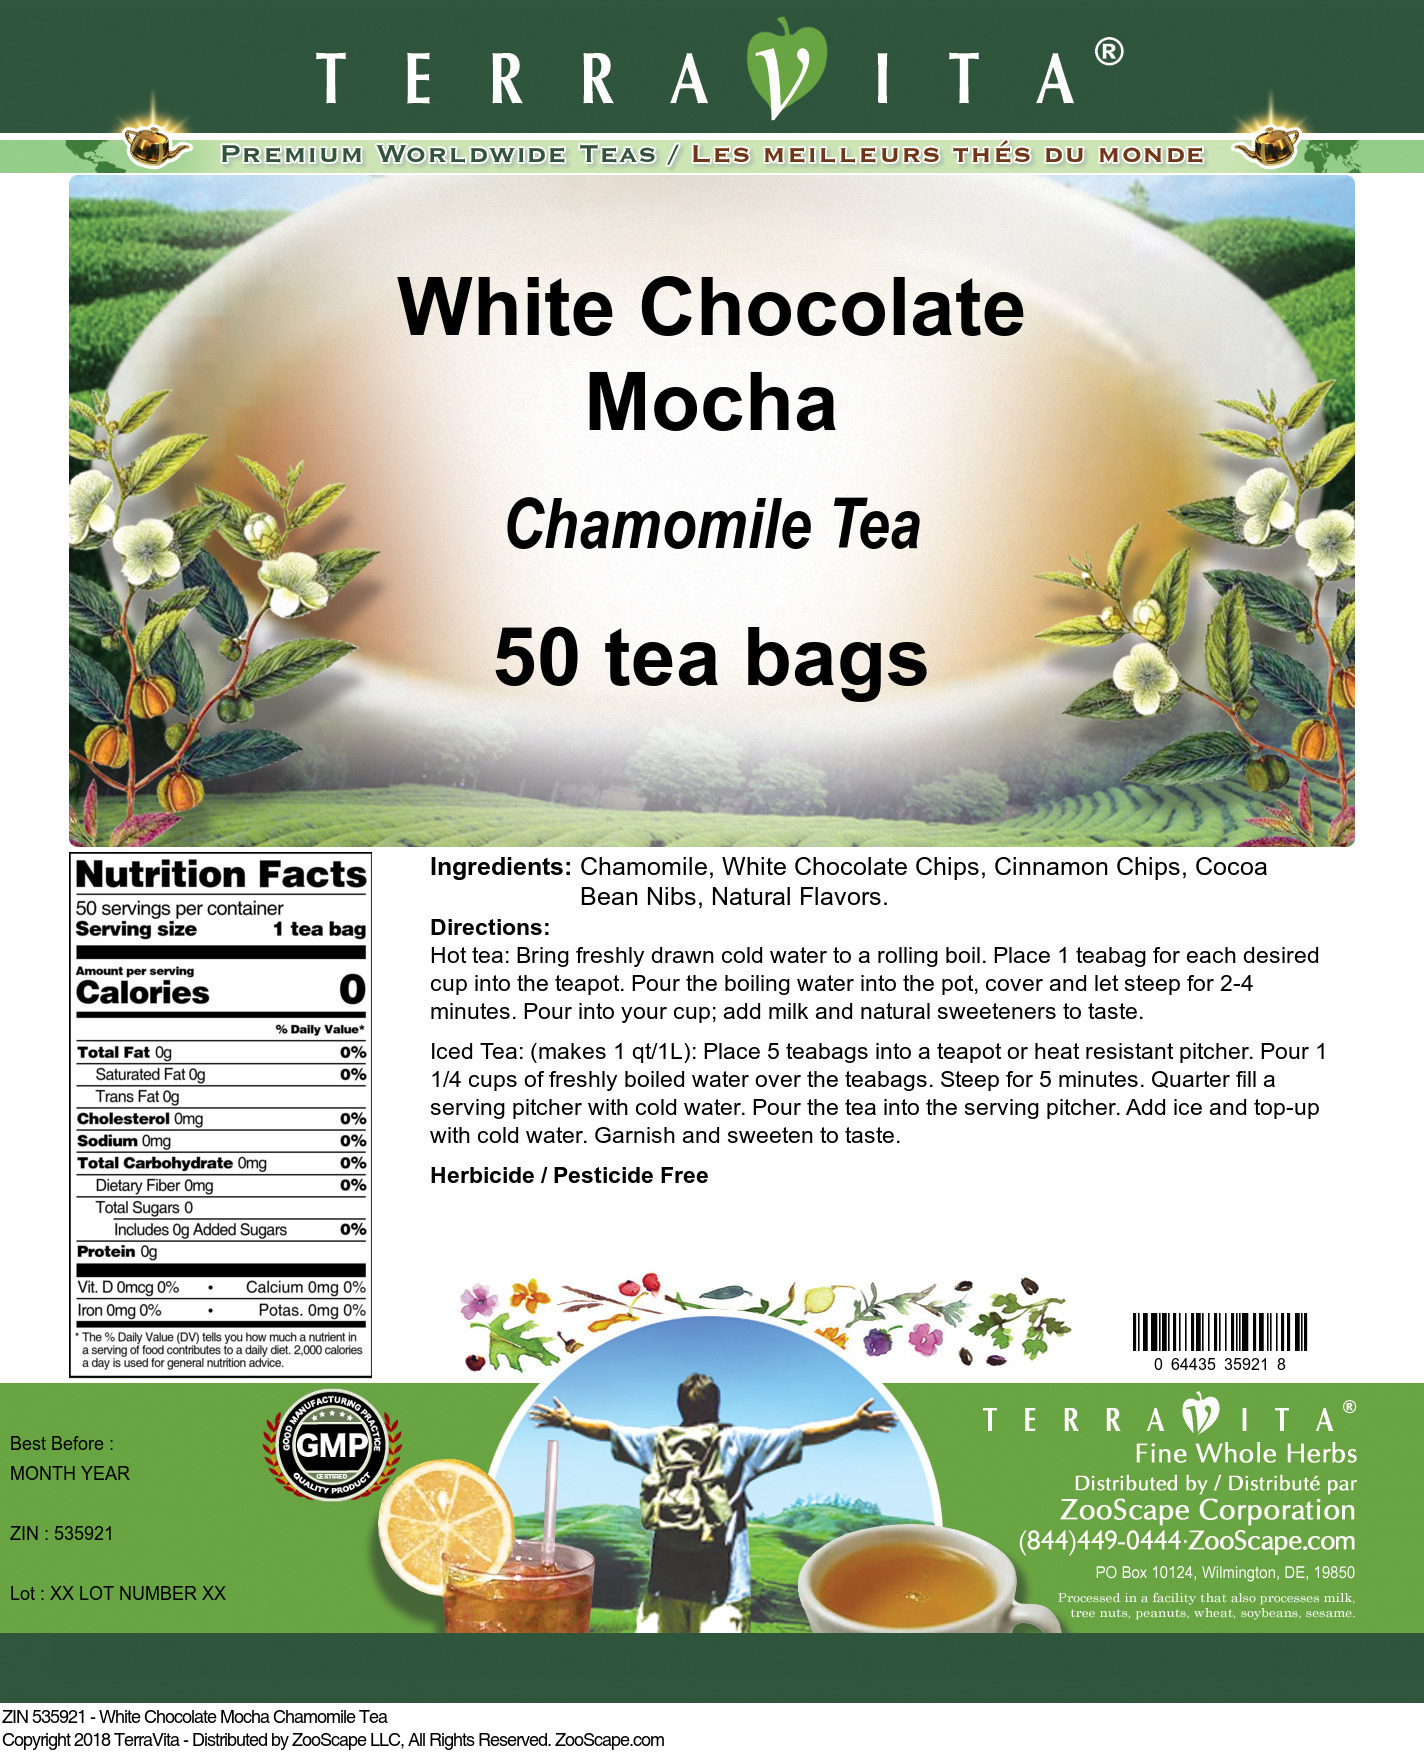 White Chocolate Mocha Chamomile Tea - Label